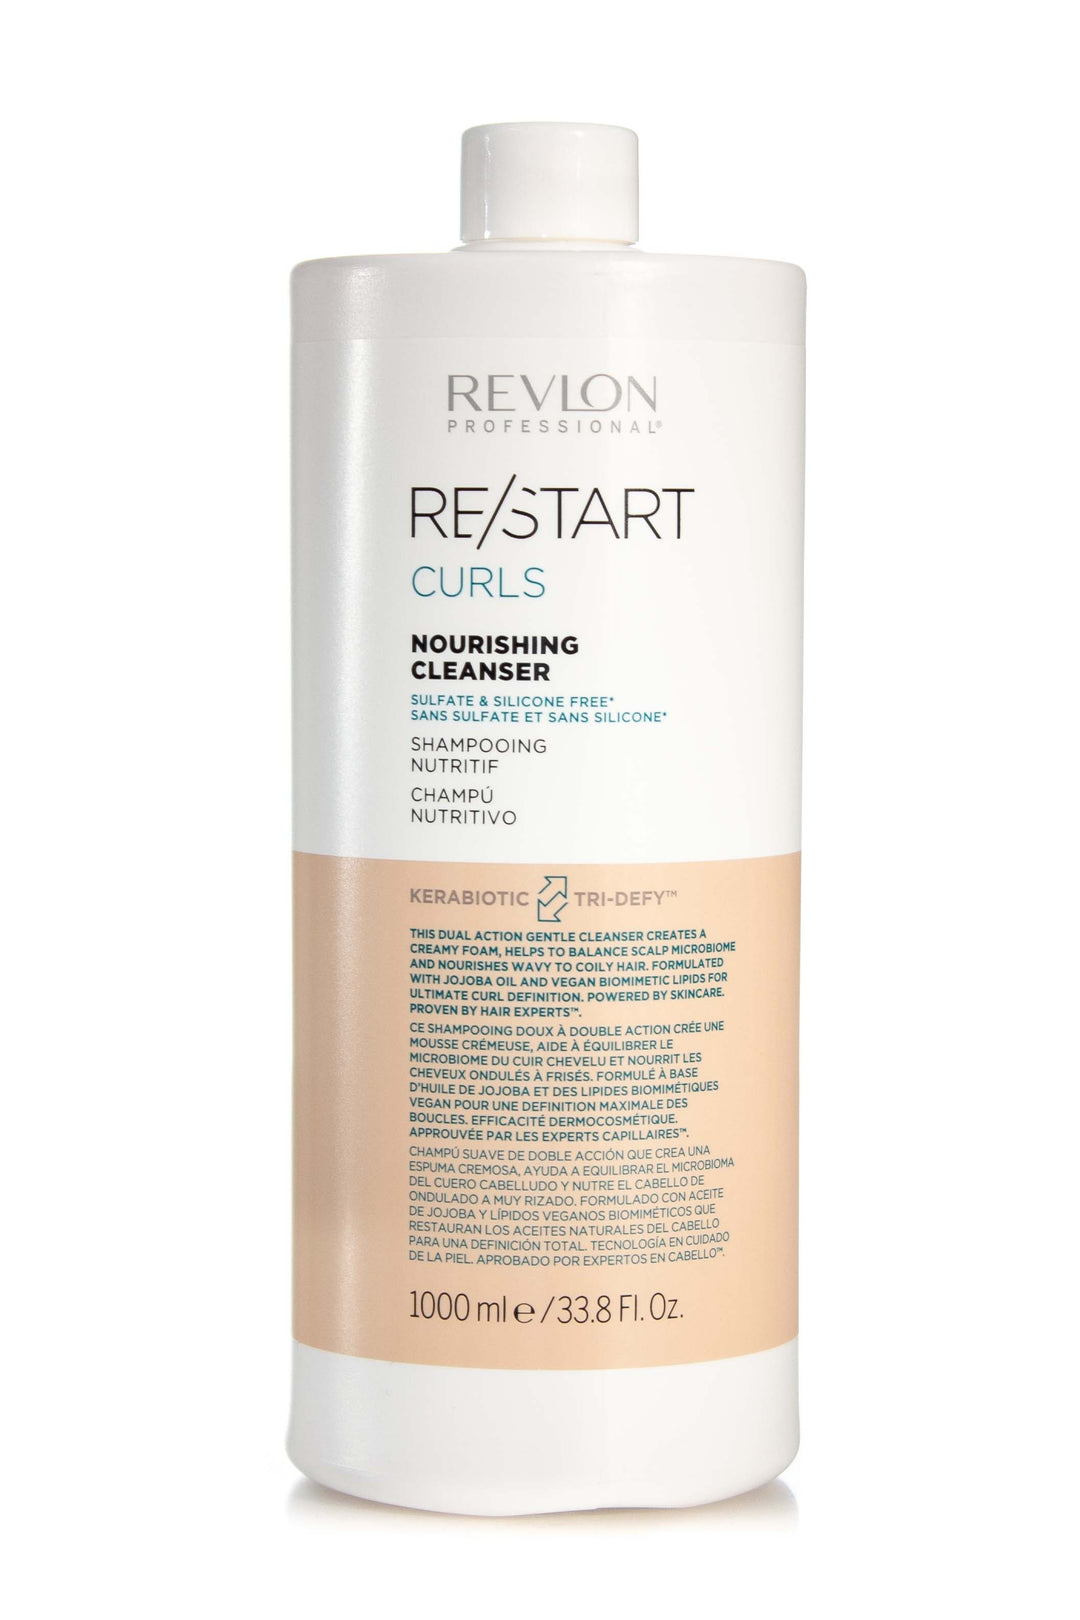 REVLON RESTART Curls Nourishing Cleanser | Various Sizes – Salon Hair Care